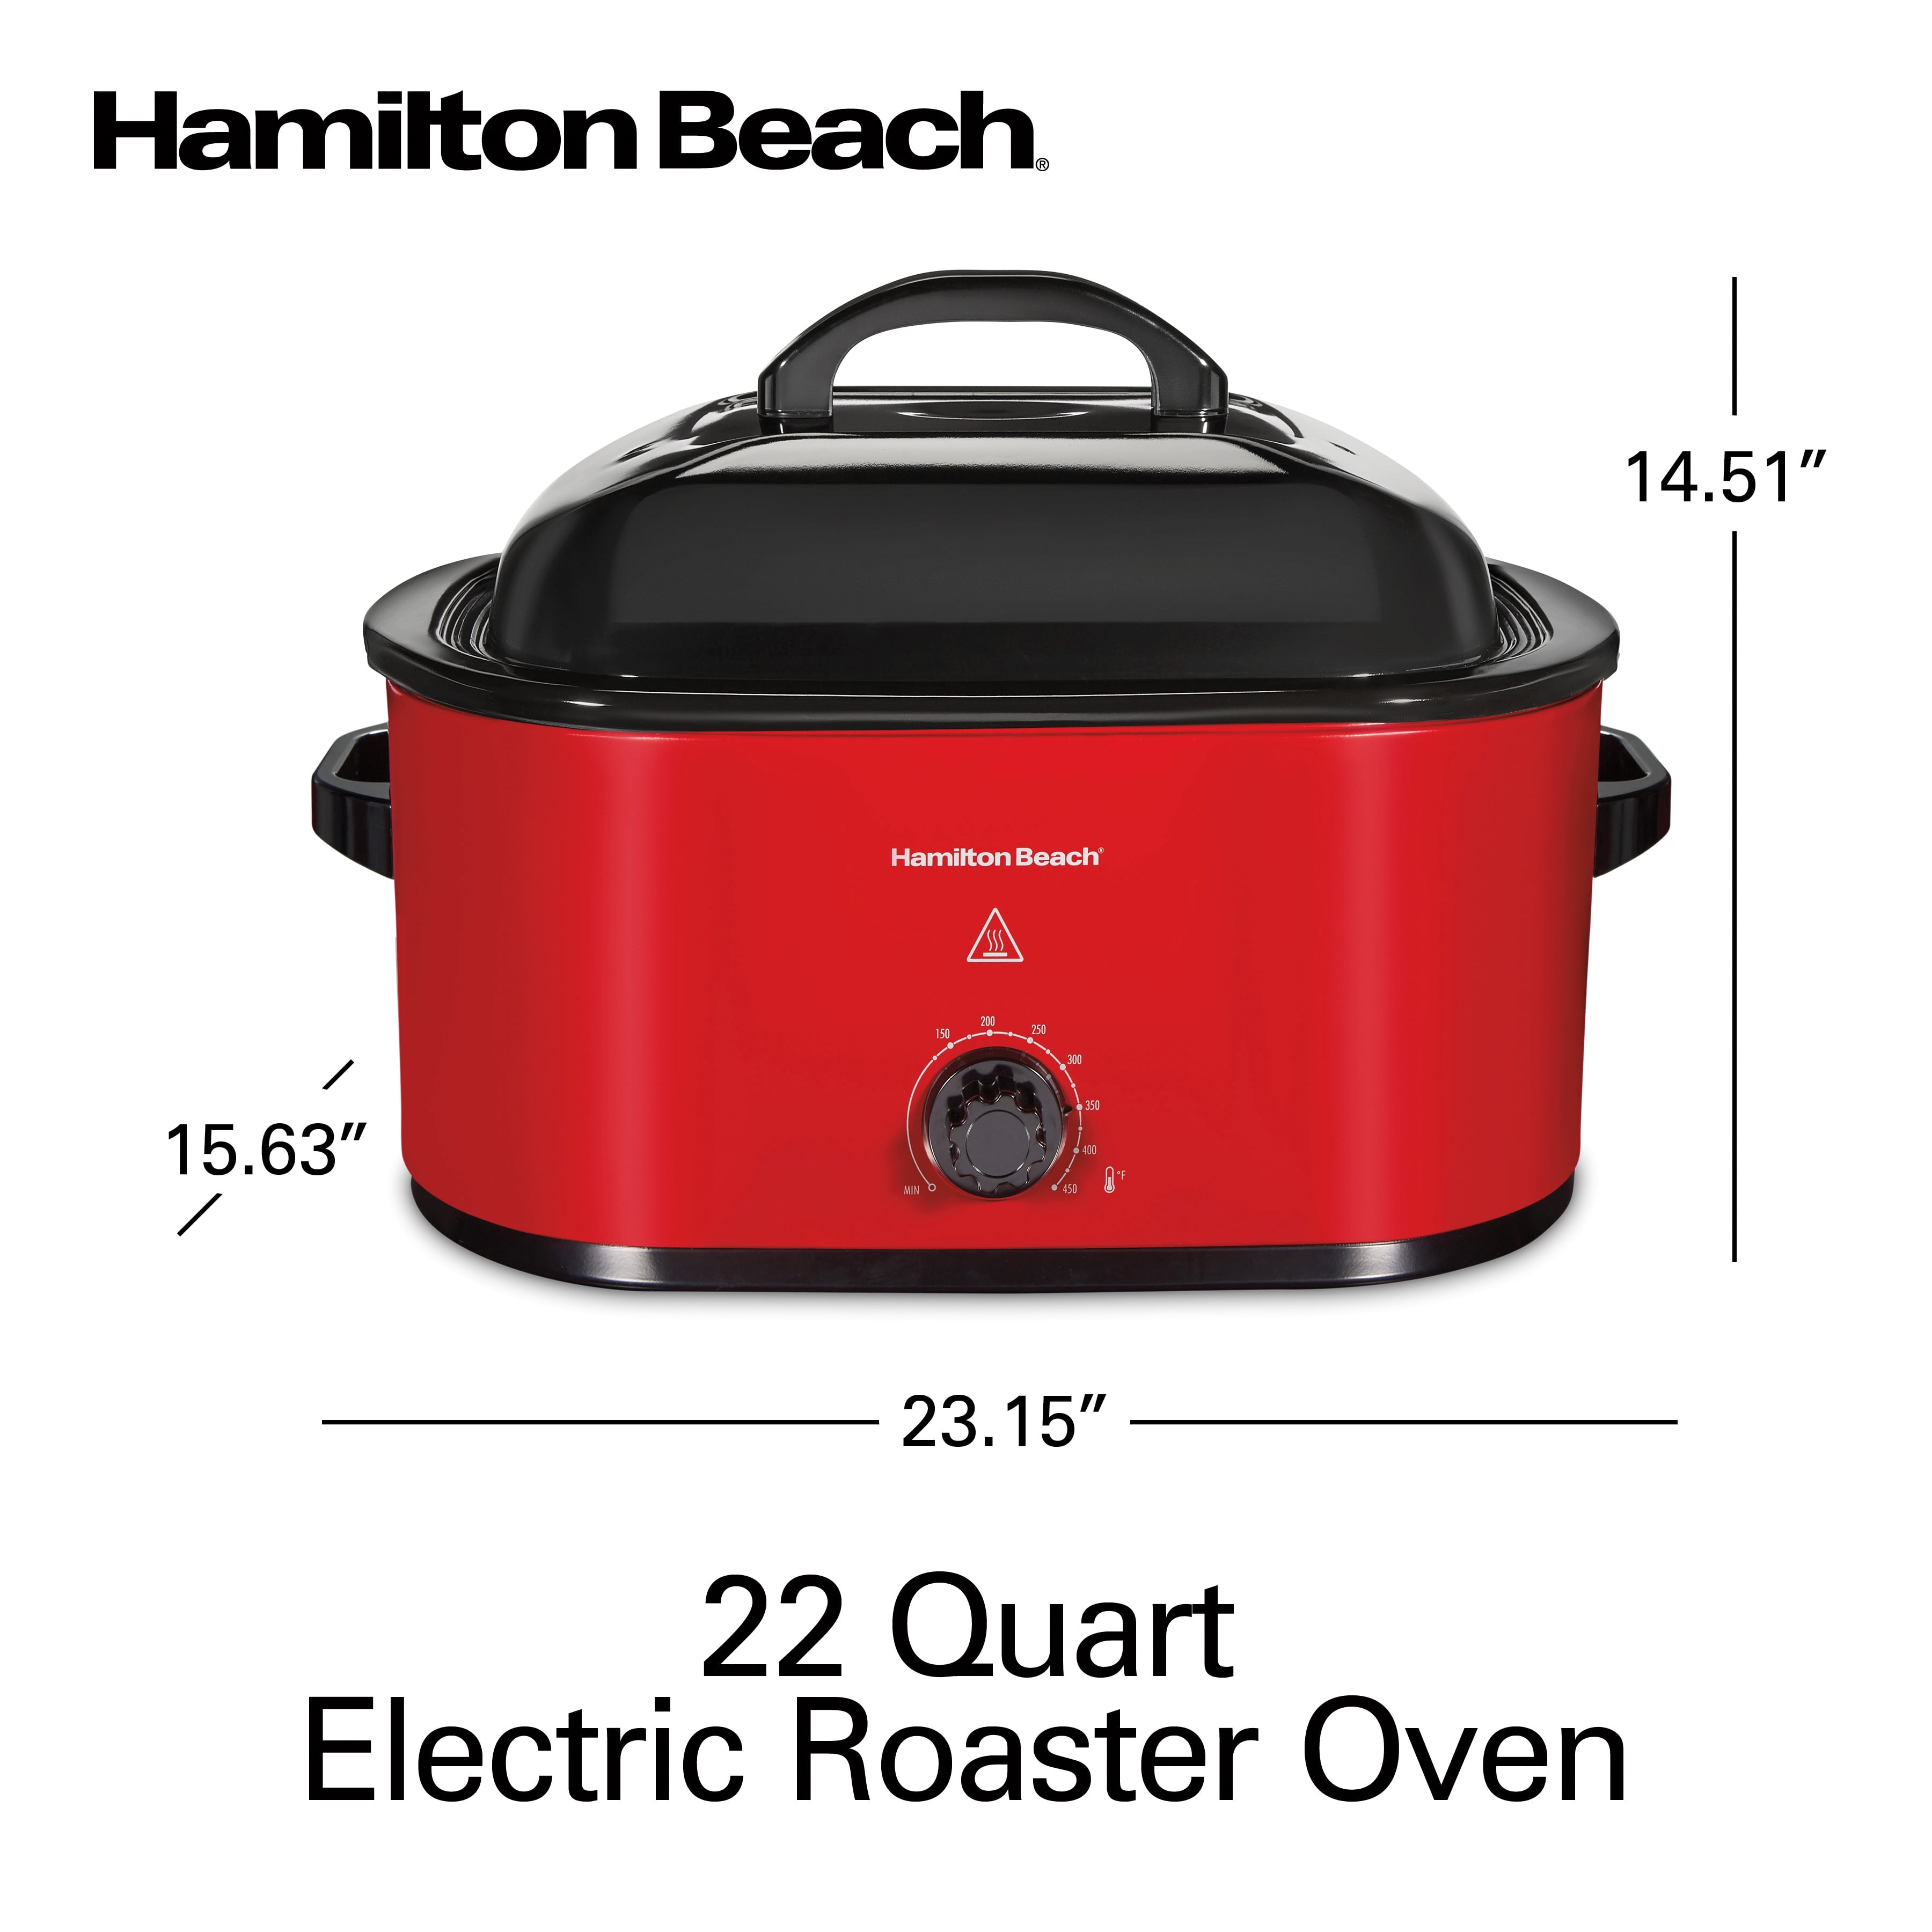 Hamilton Beach 22 Quart Roaster Oven, Fits 28 lb Turkey, Red, Model# 32231  - Walmart.com